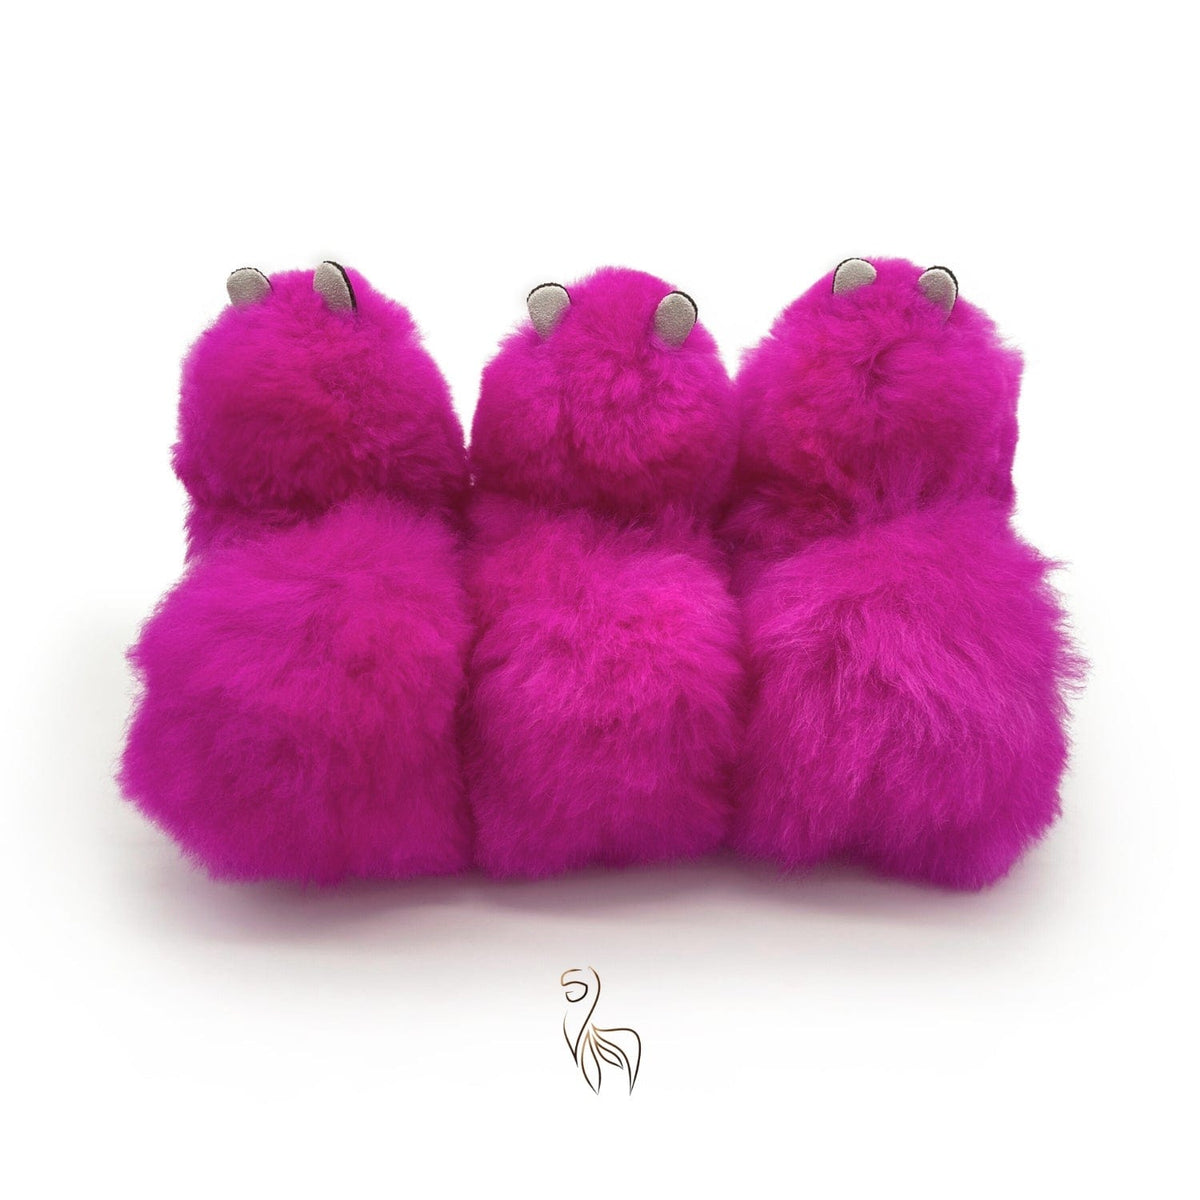 Pixie Dust - Juguete pequeño de alpaca (23 cm) - Edición limitada